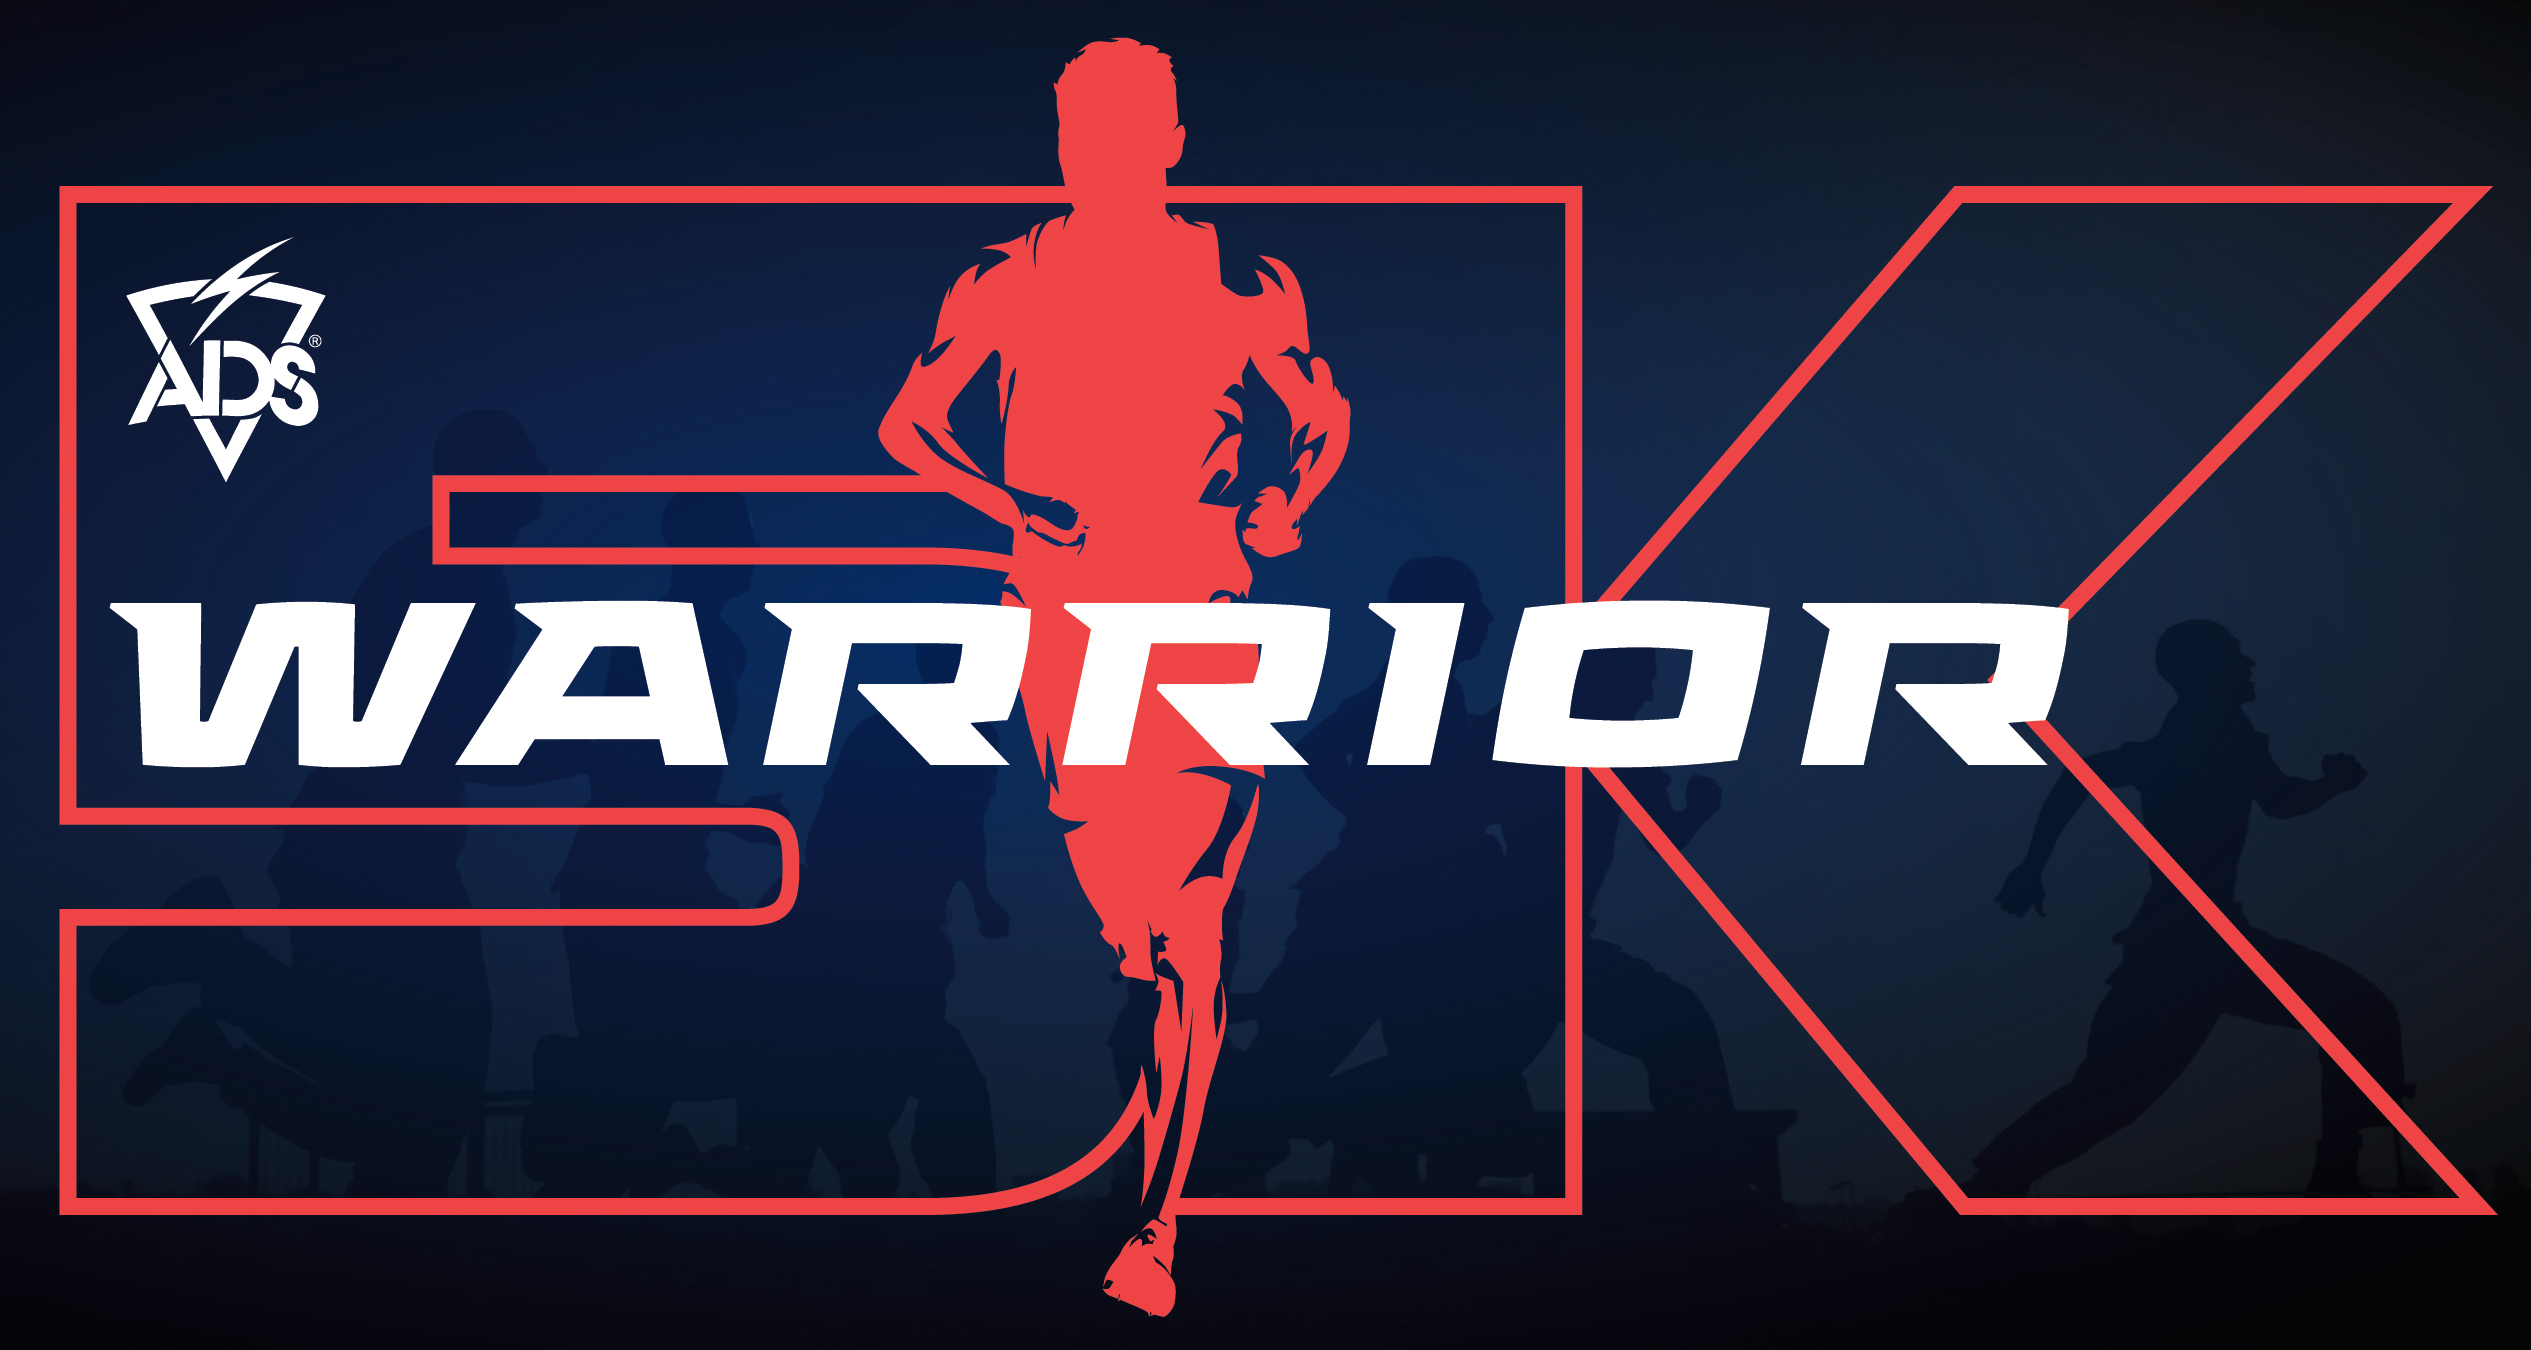 ADS Warrior West 5K logo on RaceRaves